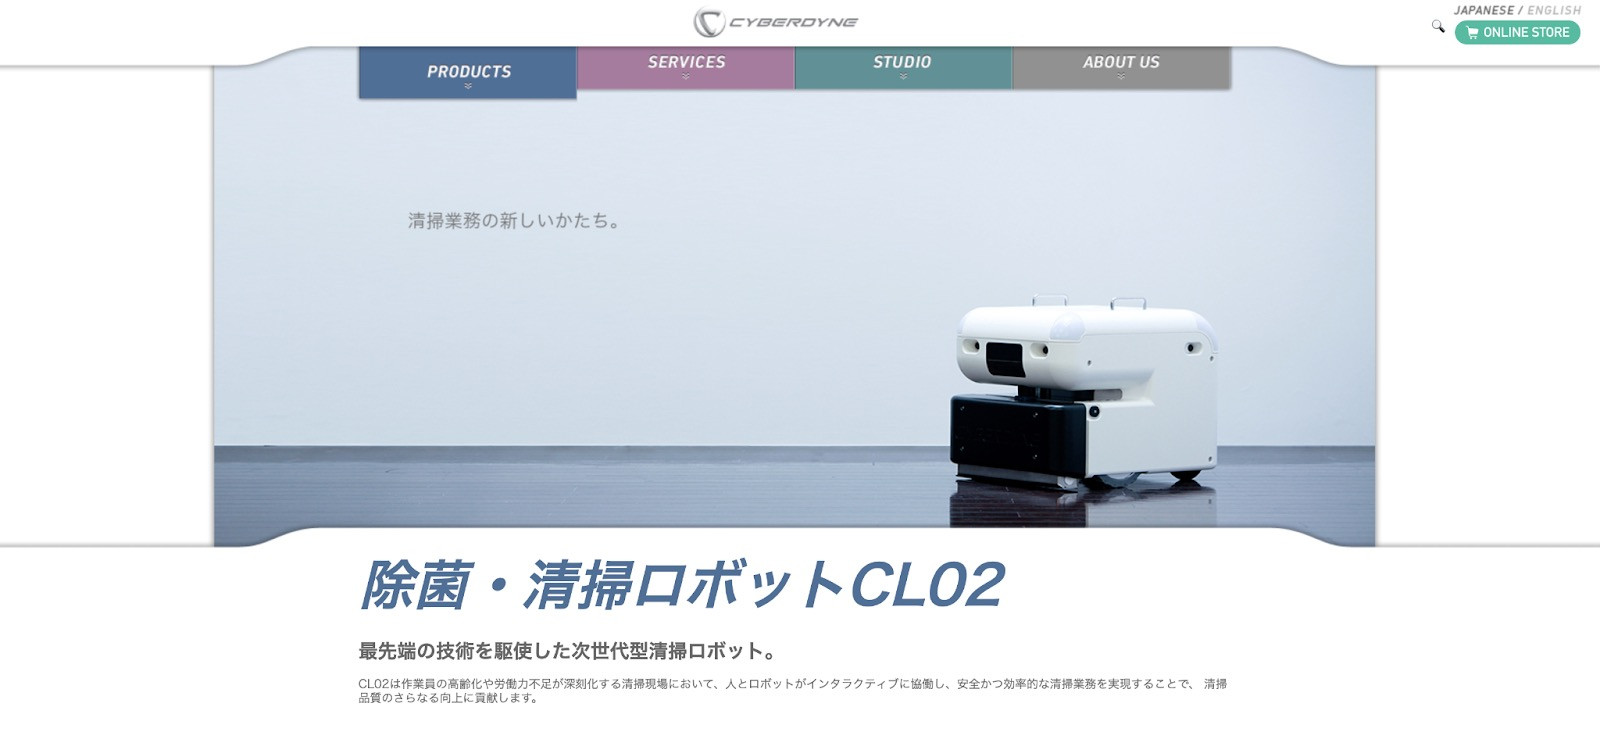 除菌清掃ロボット「CL02」